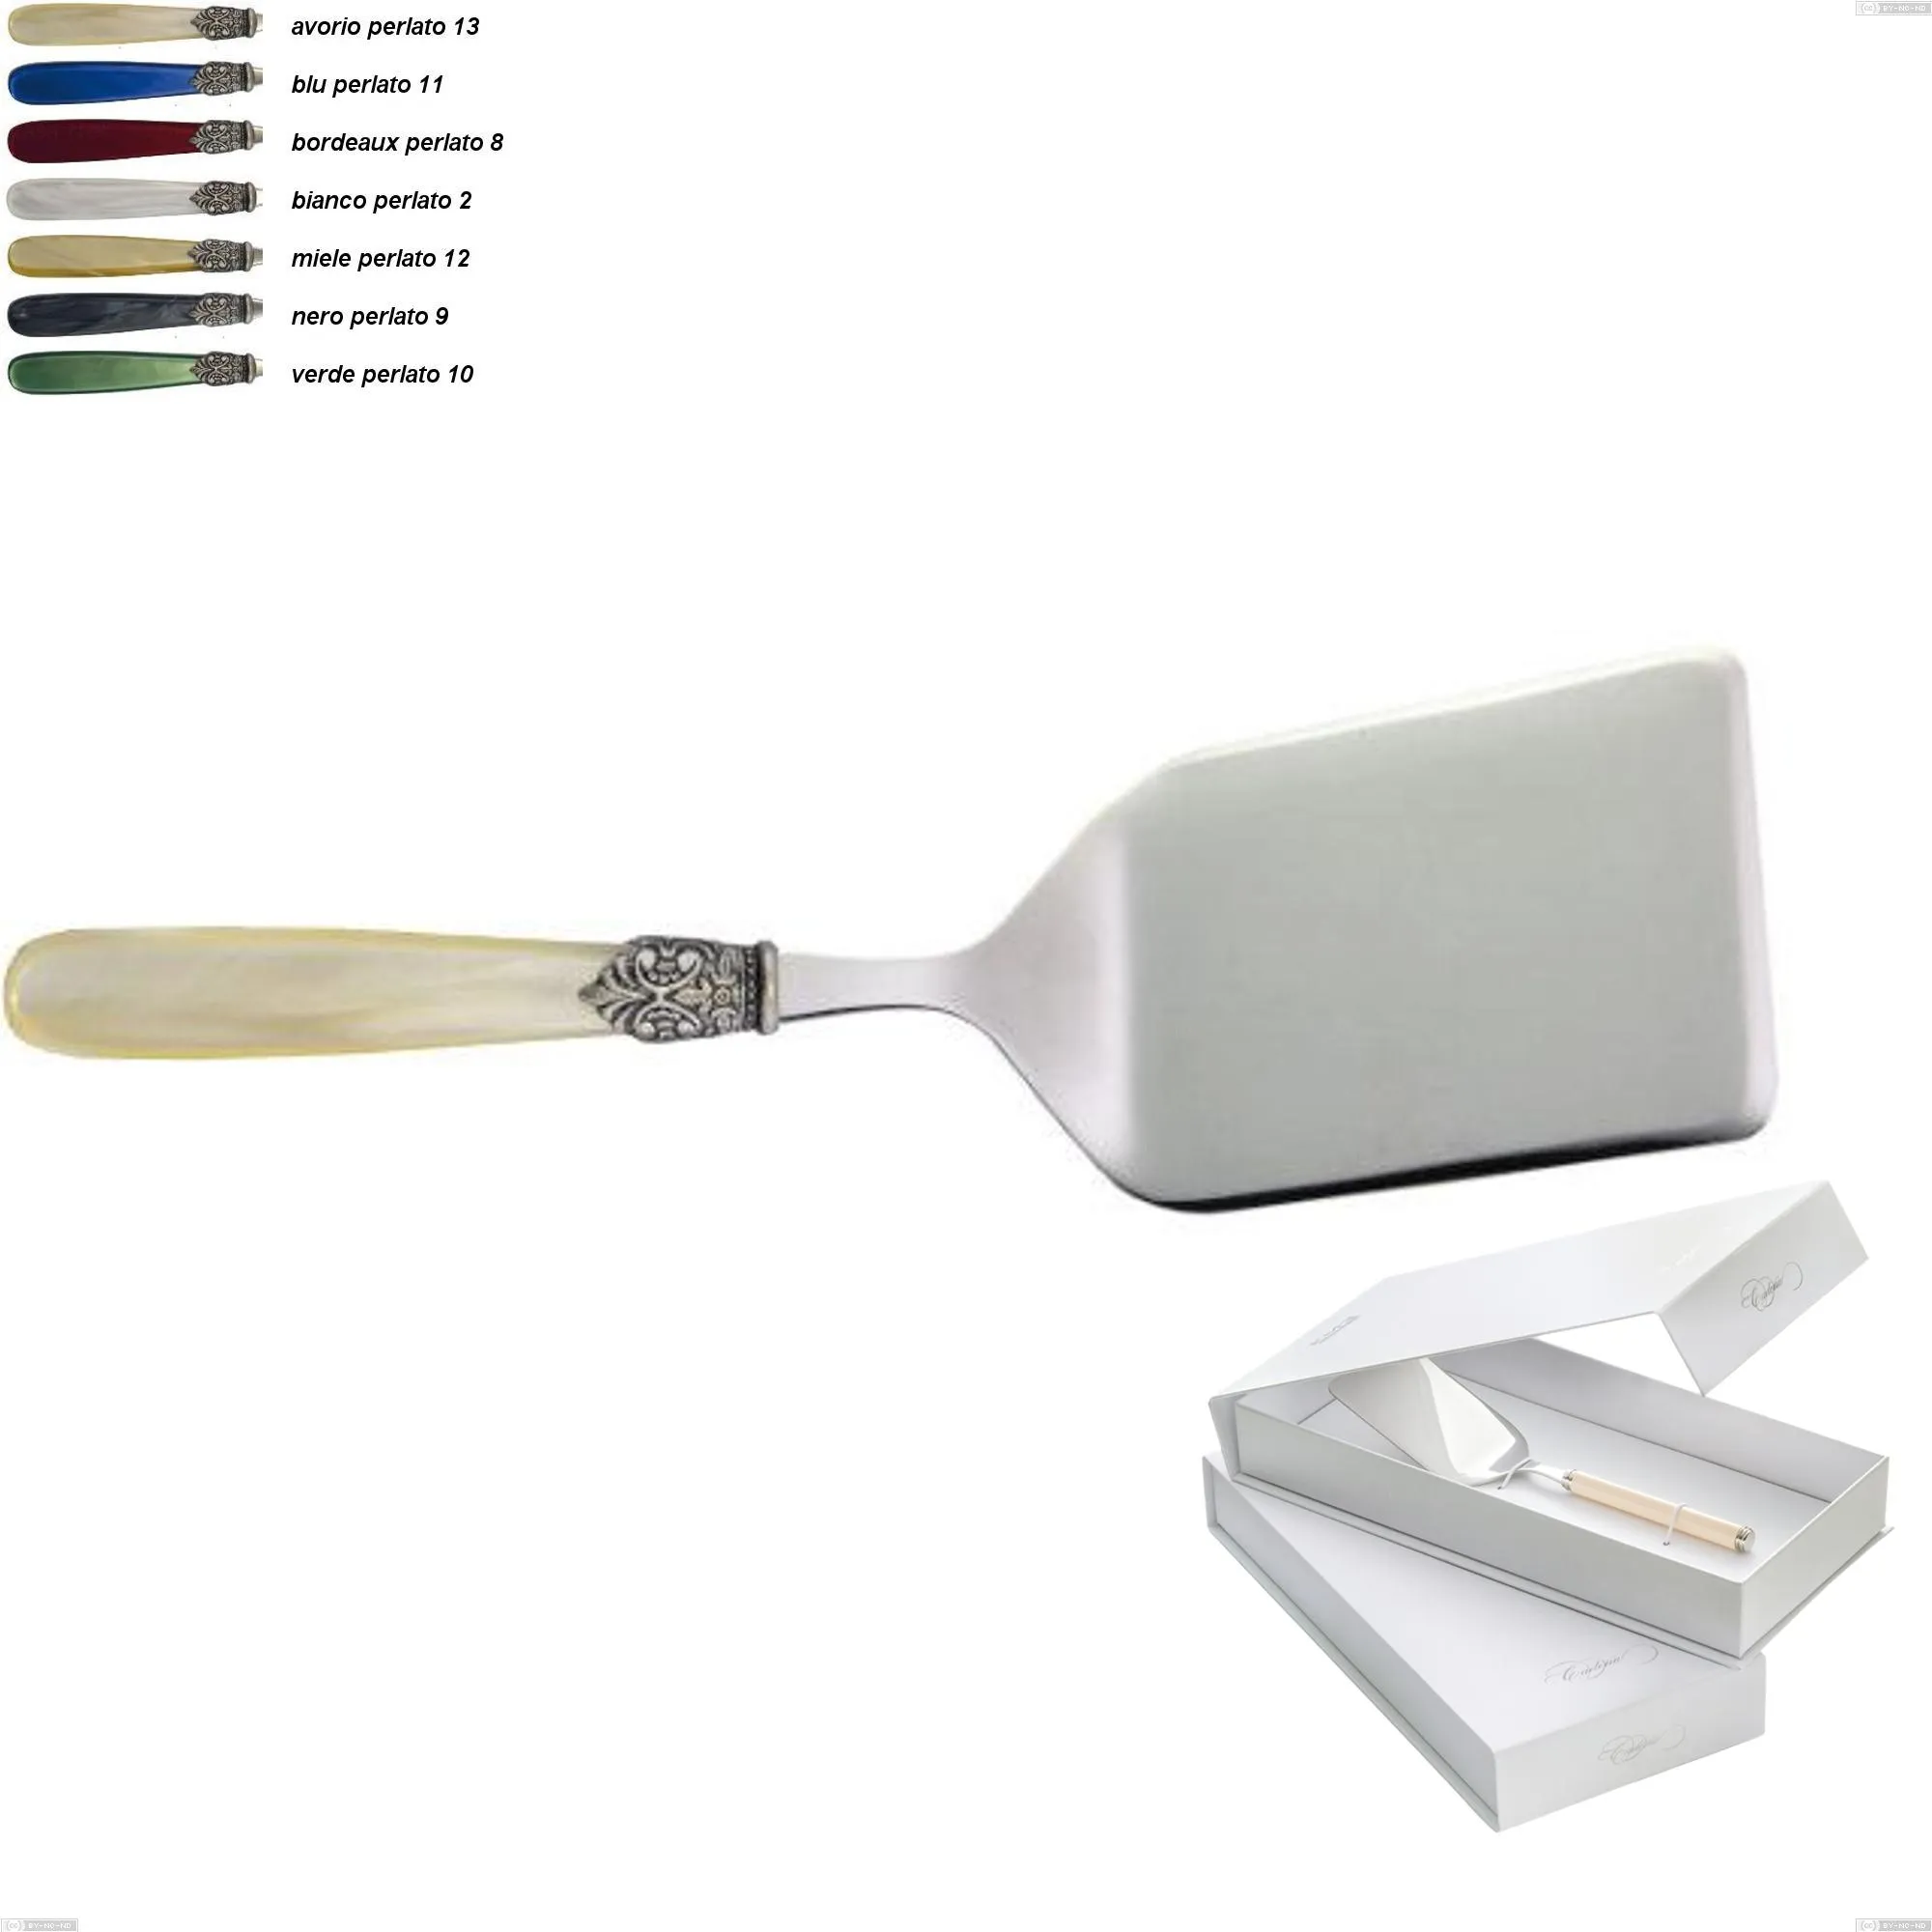 Confezione a libro 1 pezzo pala lasagne georgian, Acciaio 18/10 AISI 304 Lucido manicatura acrilico perlato